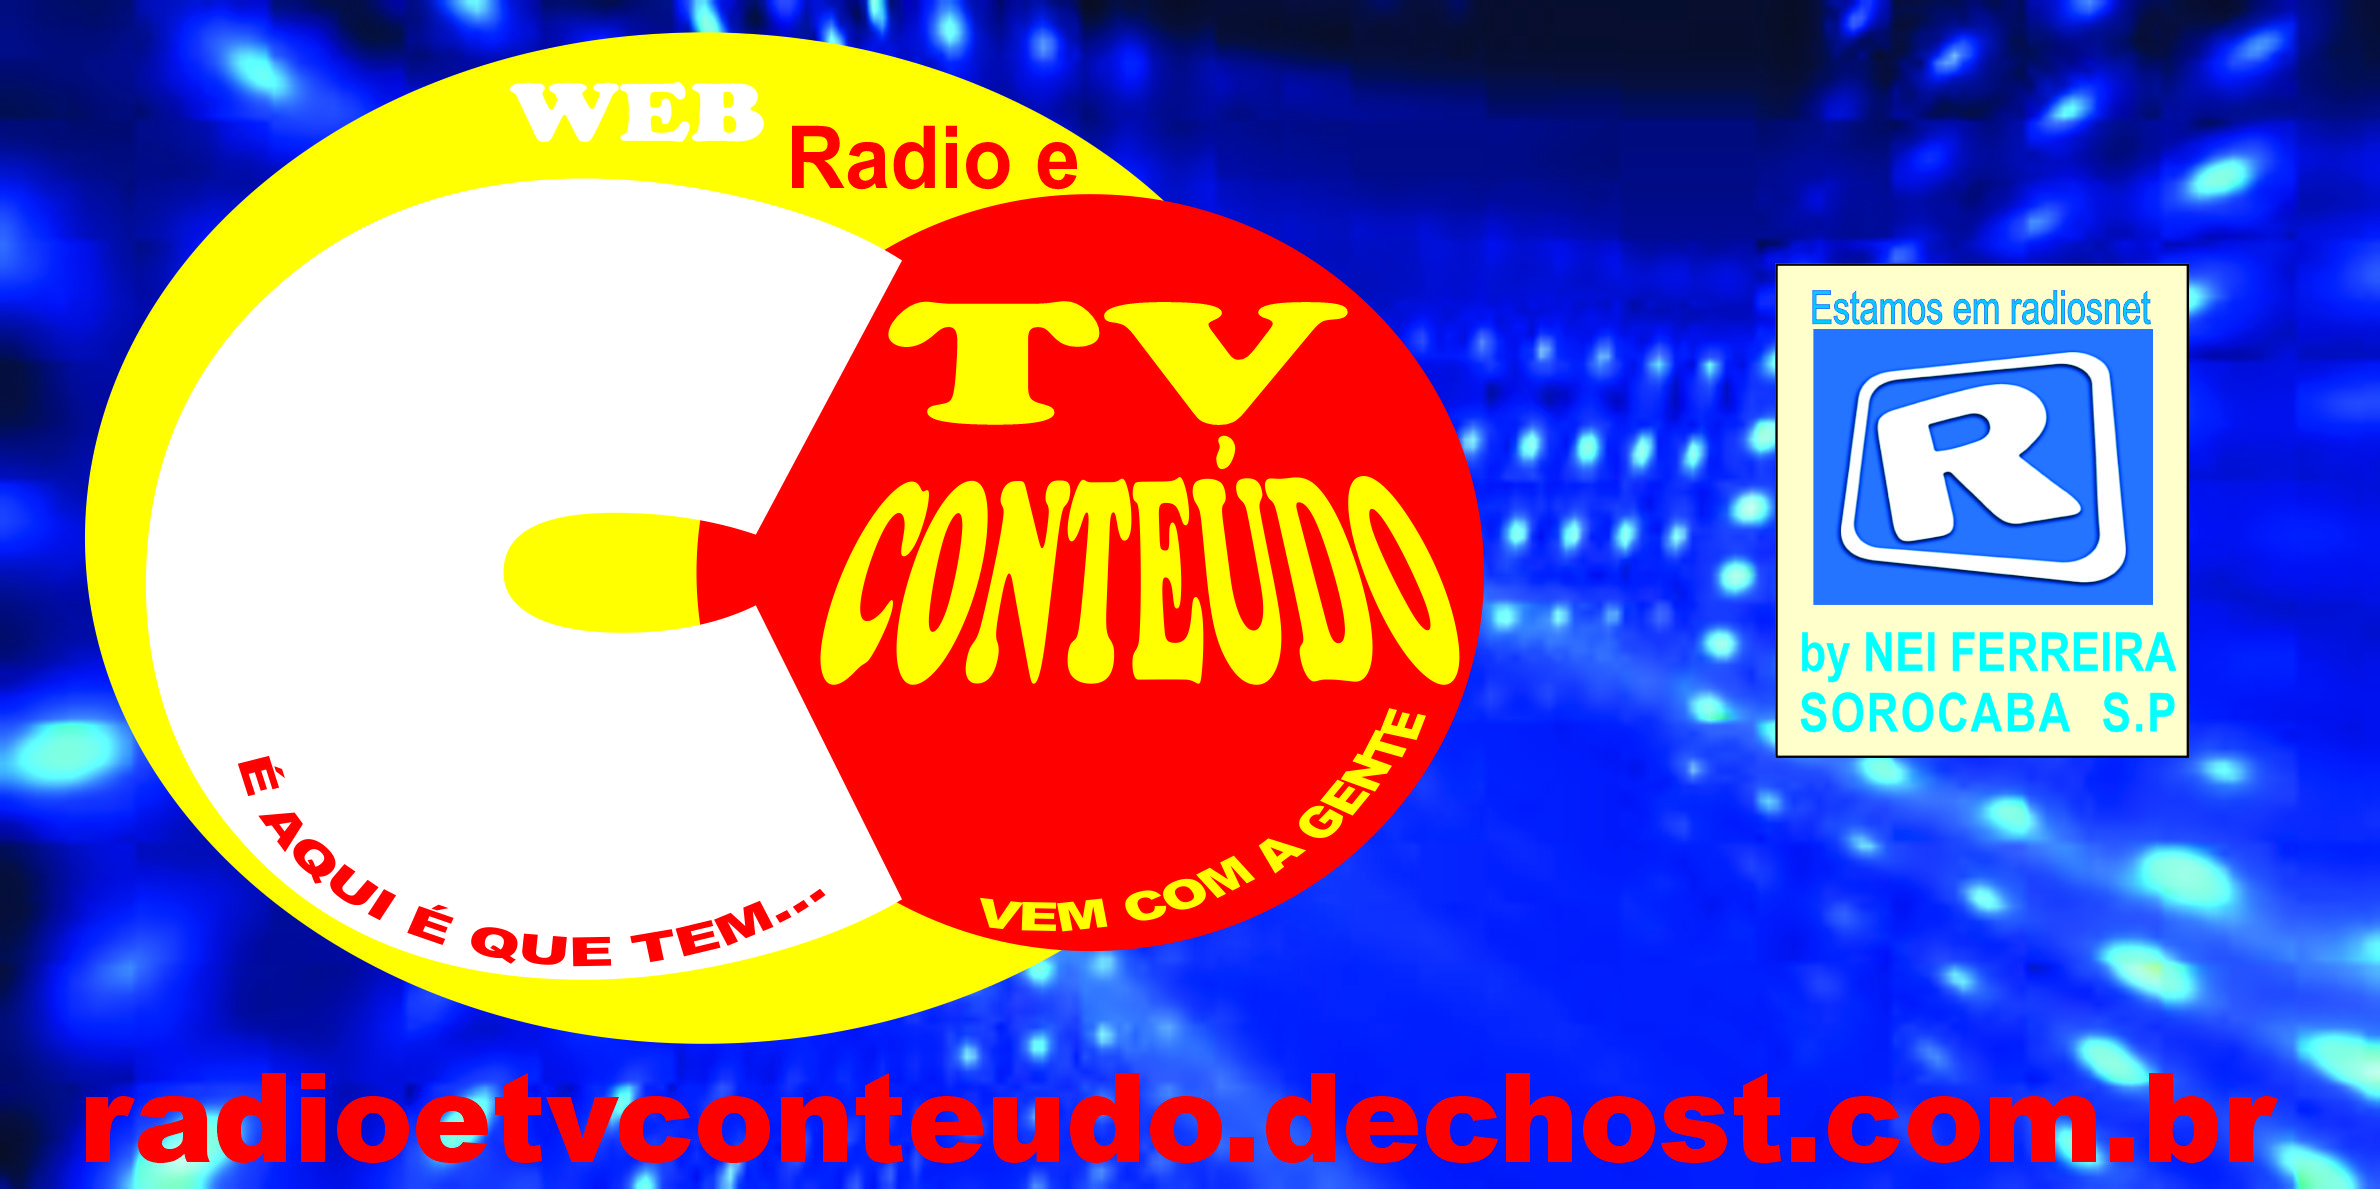 RADIO E TV CONTEÚDO